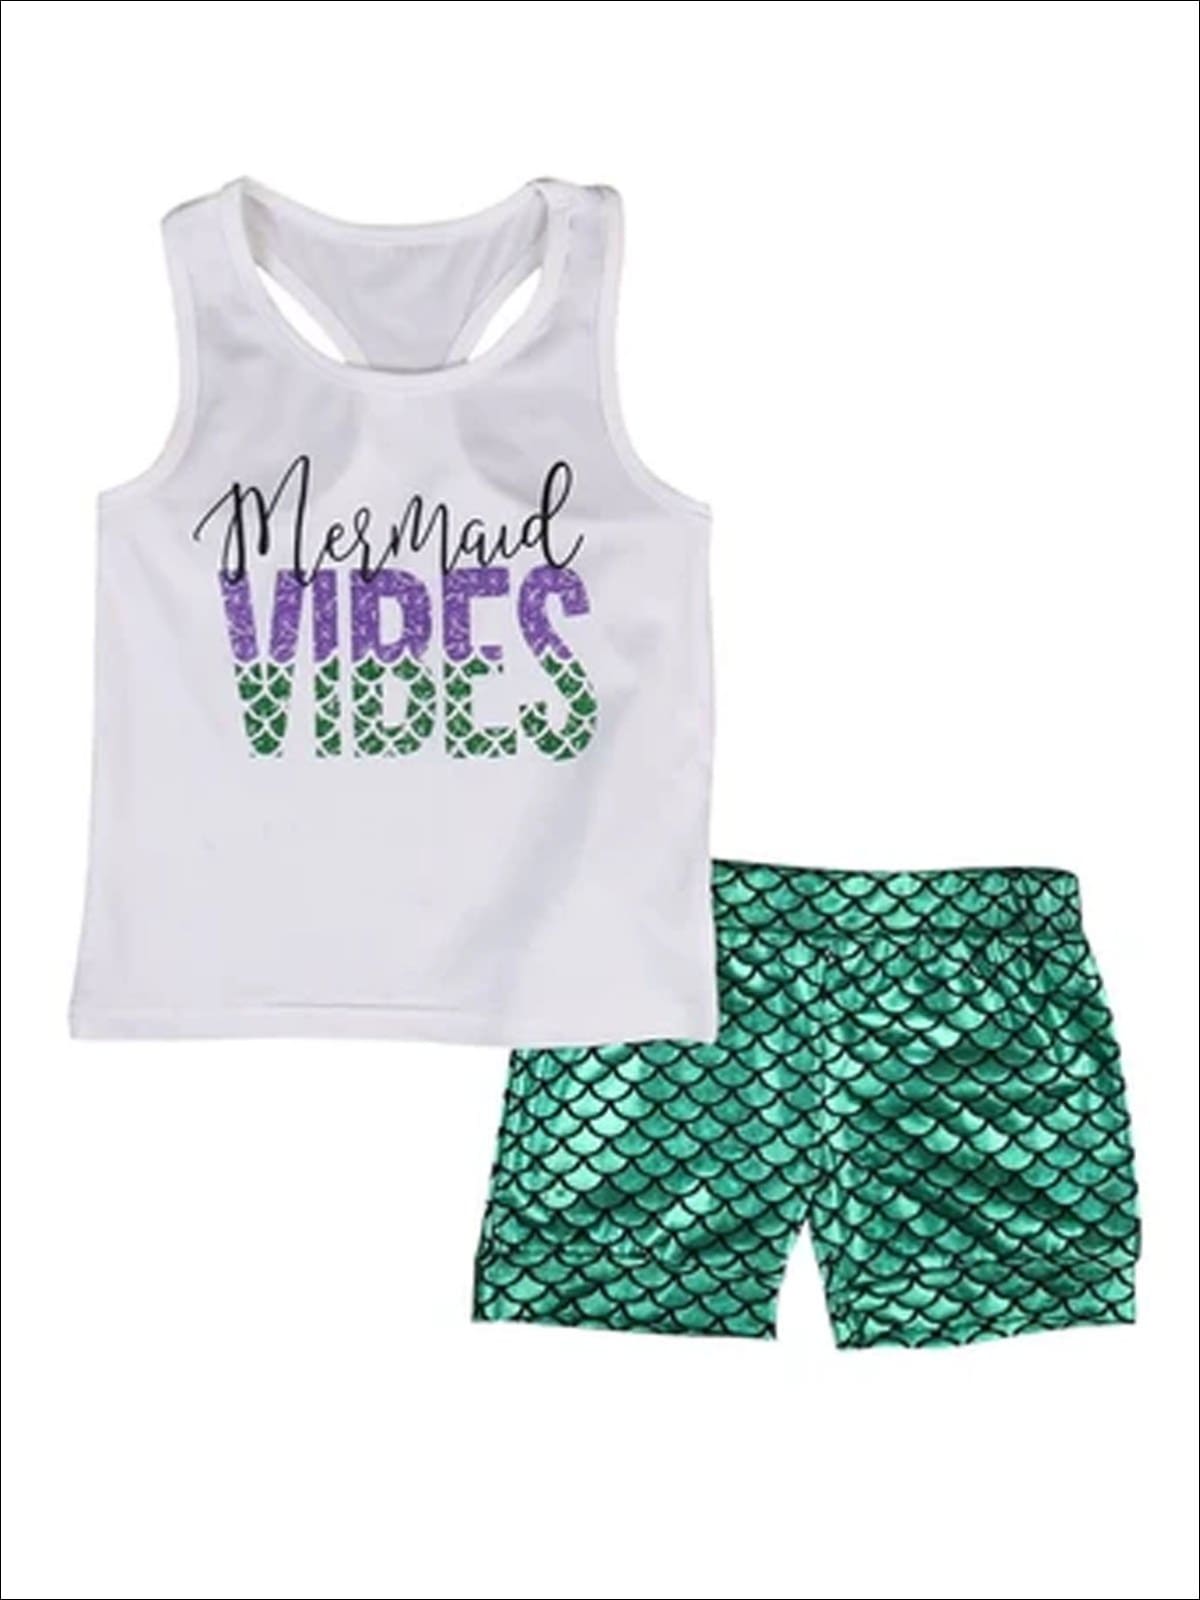 Girls Mermaid Vibes Tank Top & Shorts Set - Similar To Image / 2T - Girls Spring Casual Set